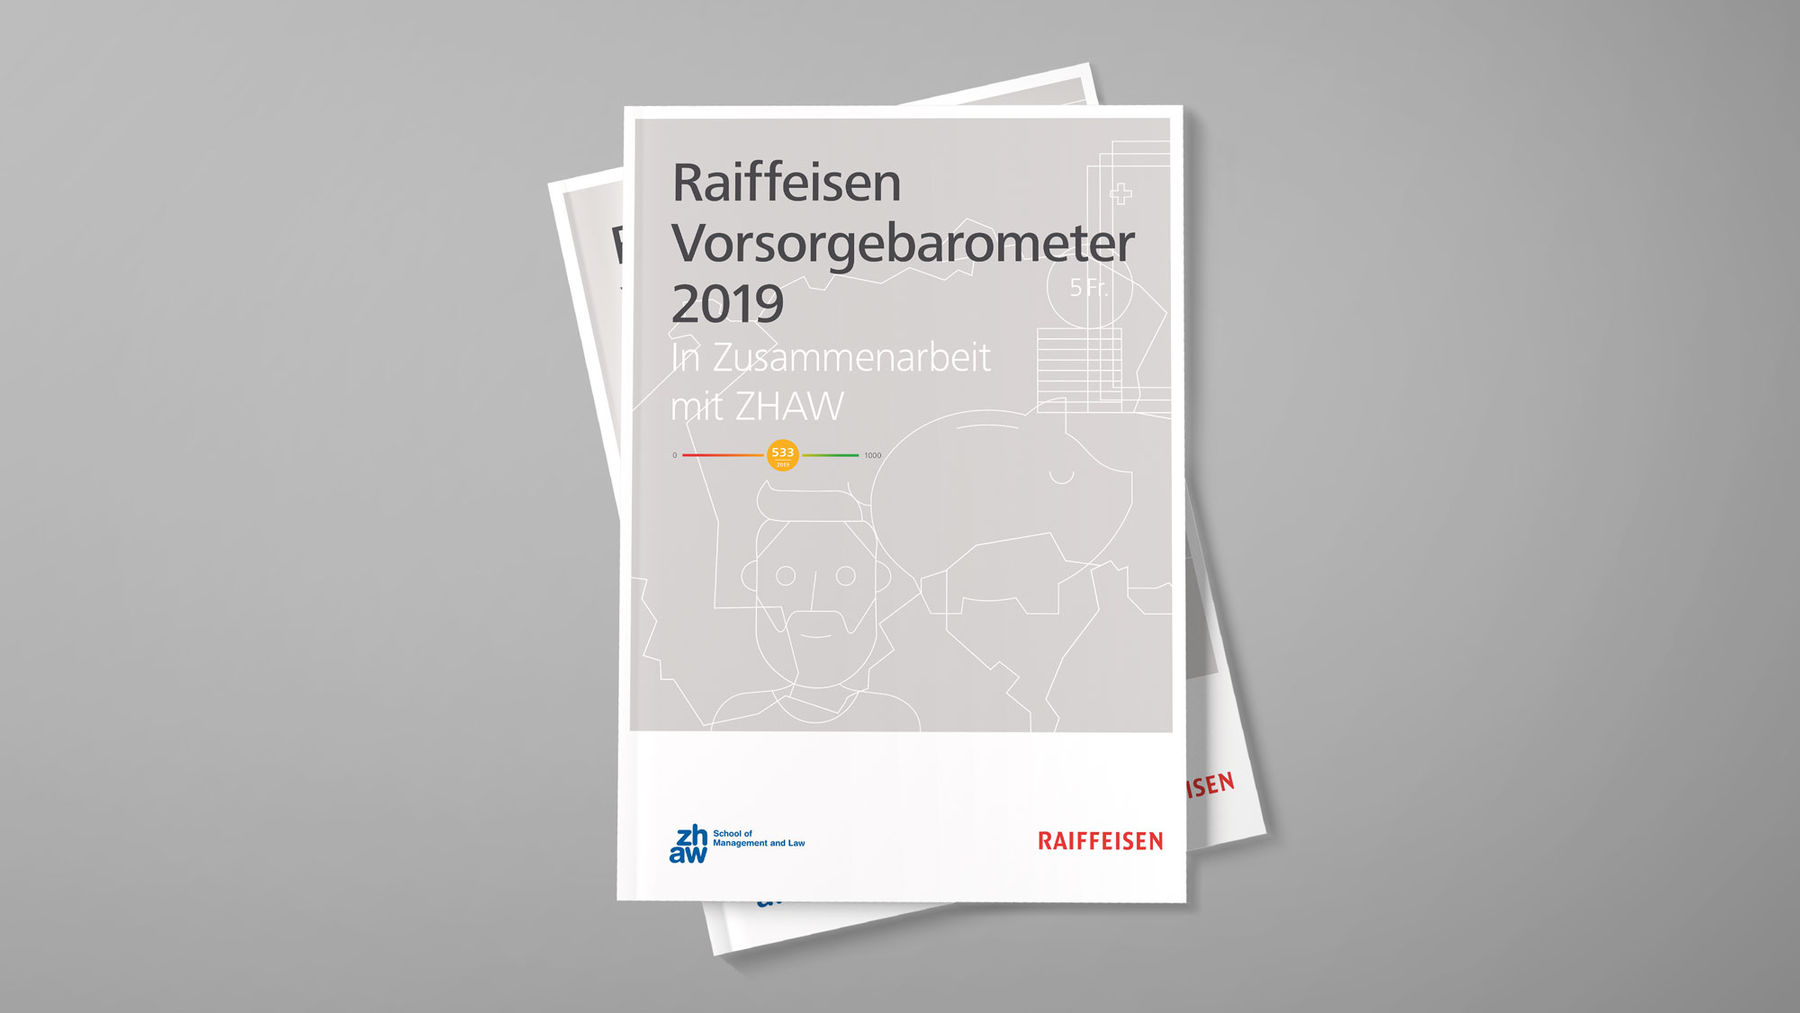 Raiffeisen Vorsorgebarometer 2019